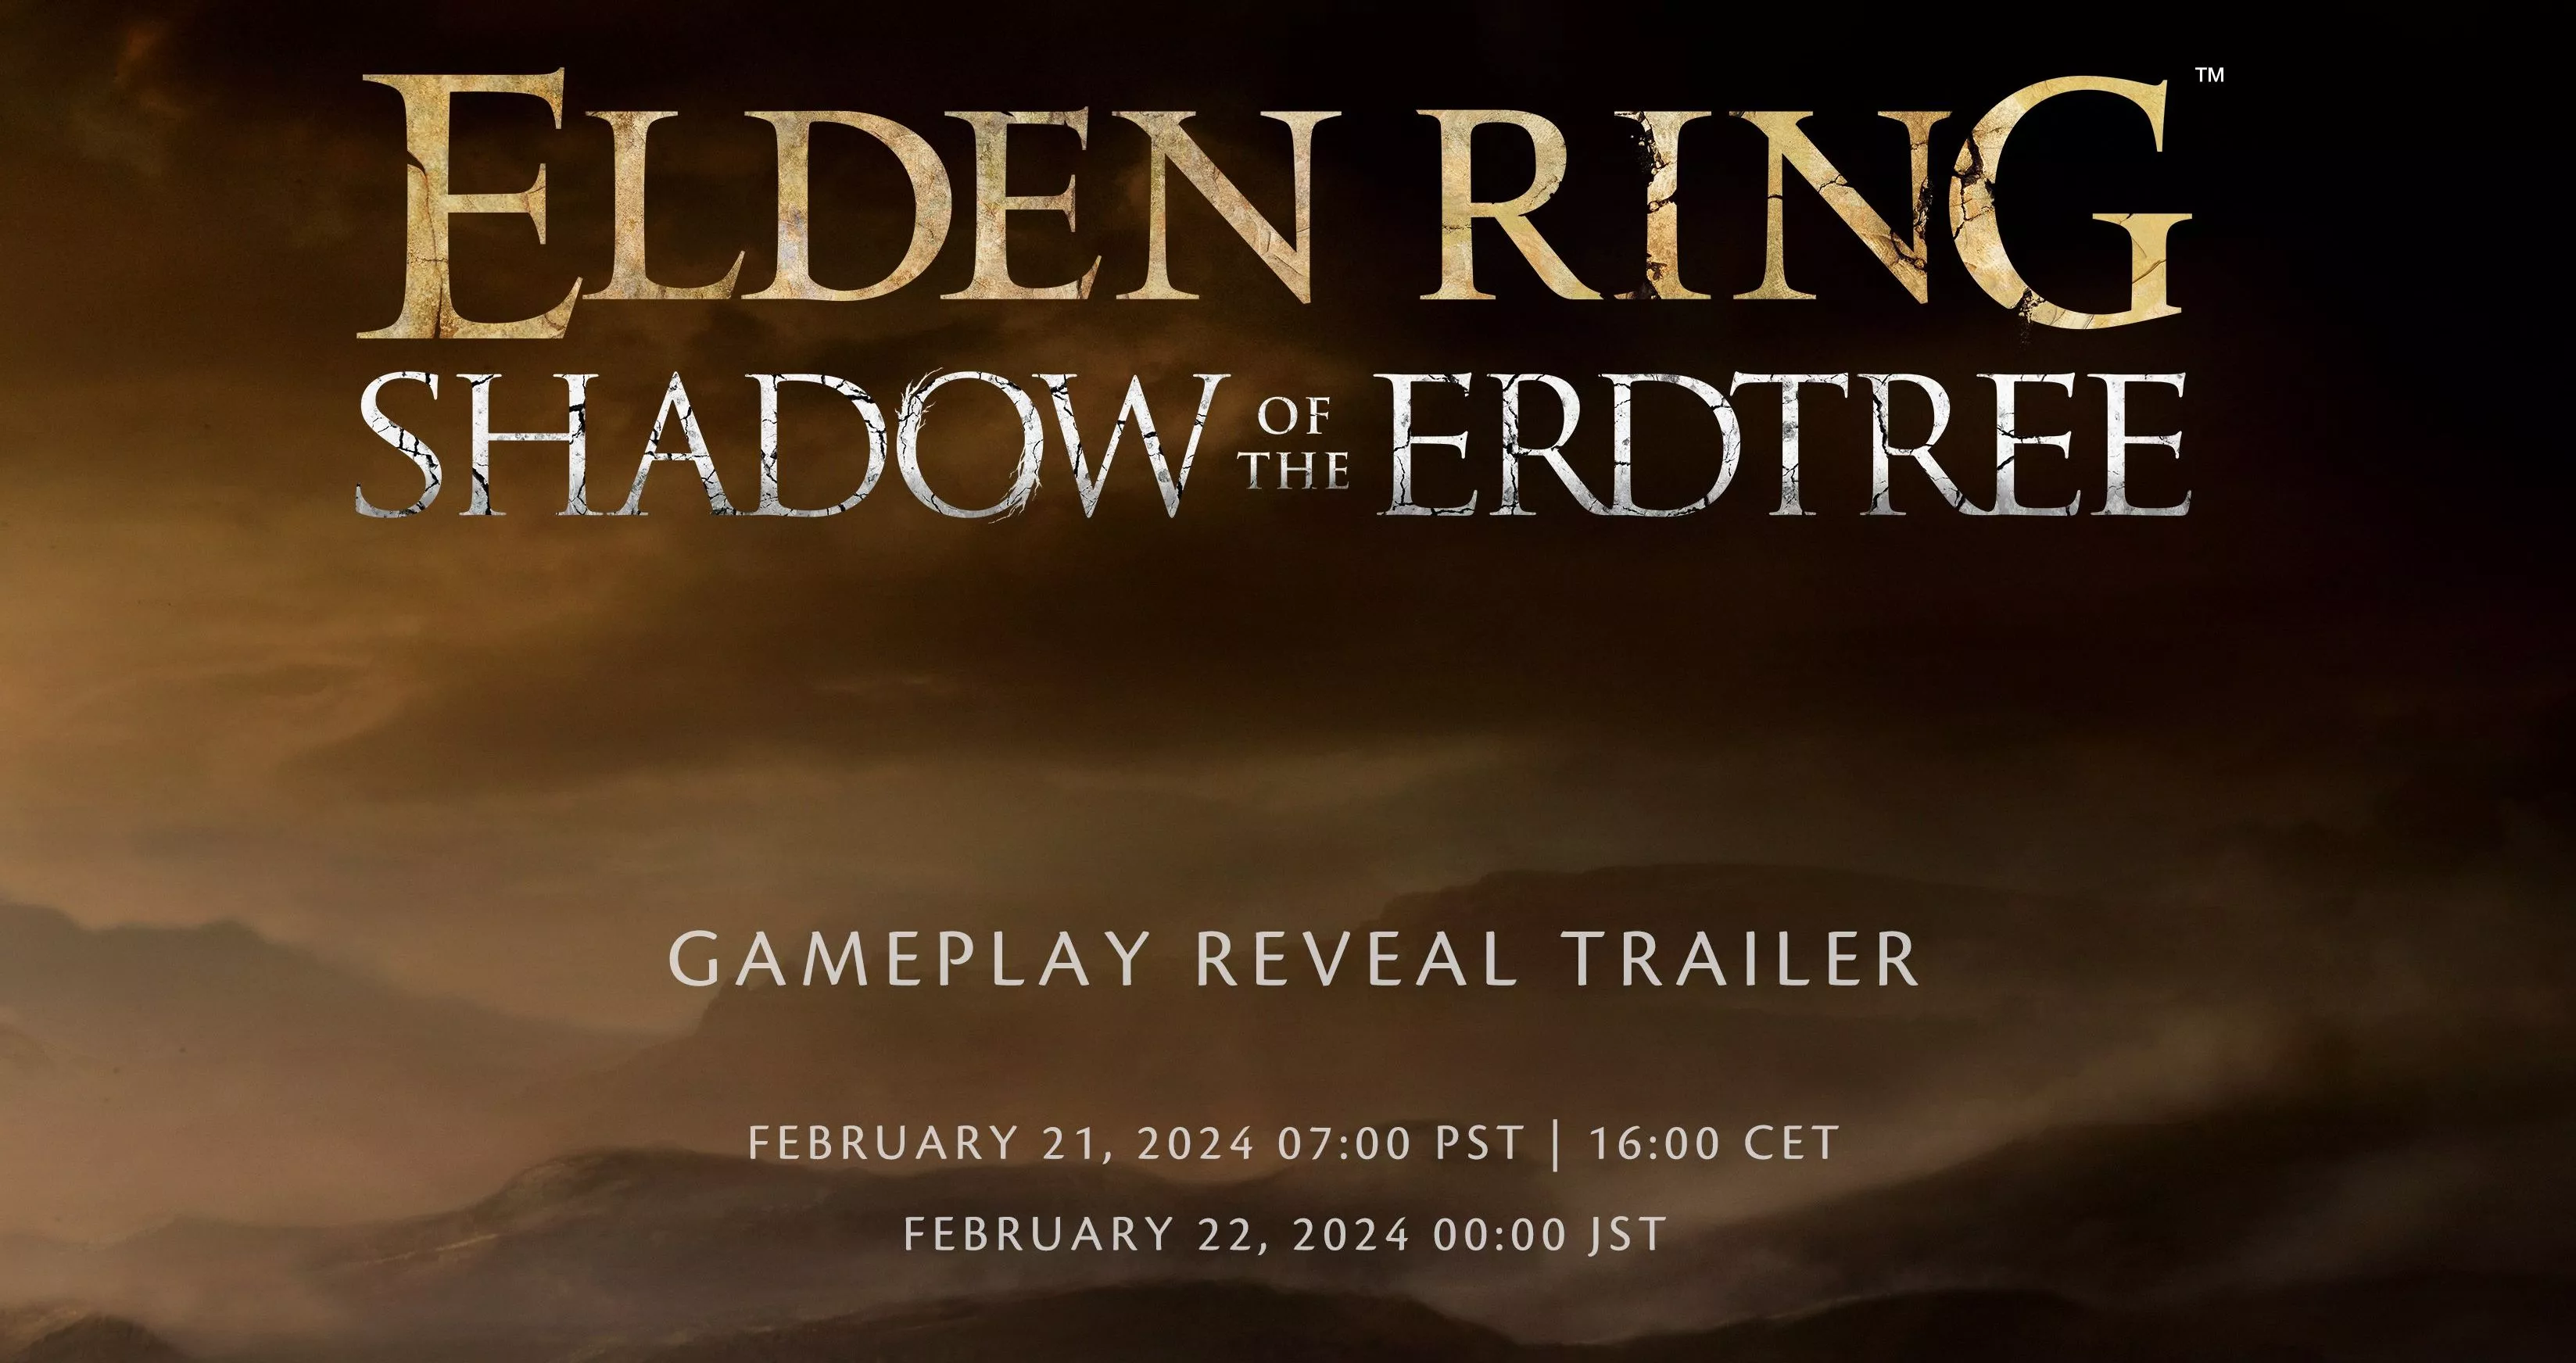 Gameplay-Trailer zu Elden Ring Shadow of the Erdtree angekündigt Heropic